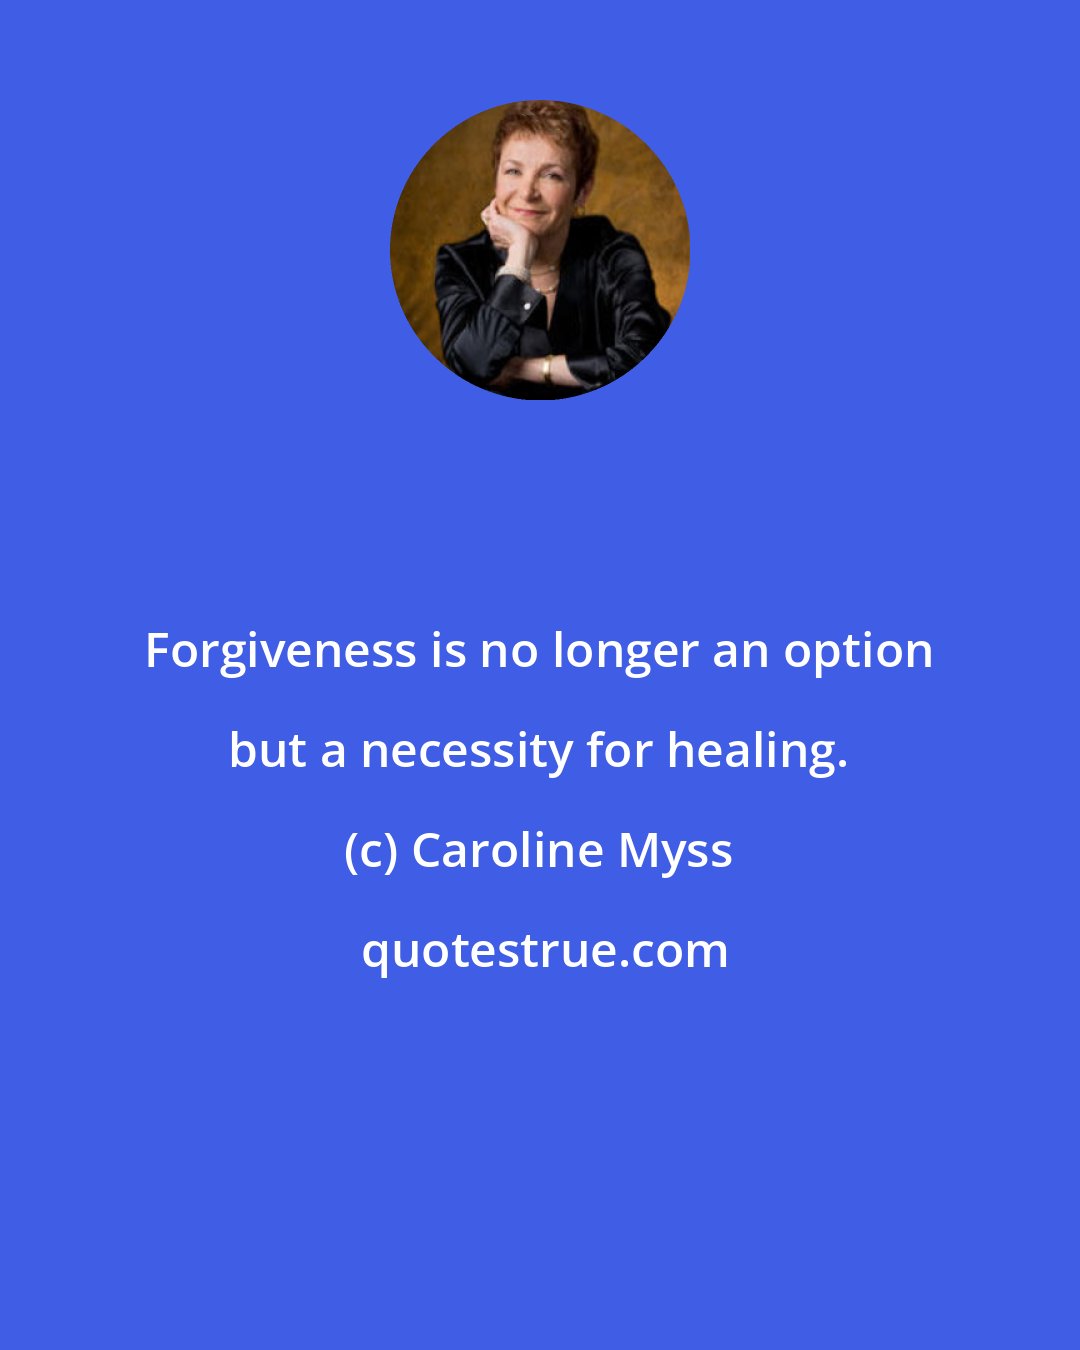 Caroline Myss: Forgiveness is no longer an option but a necessity for healing.